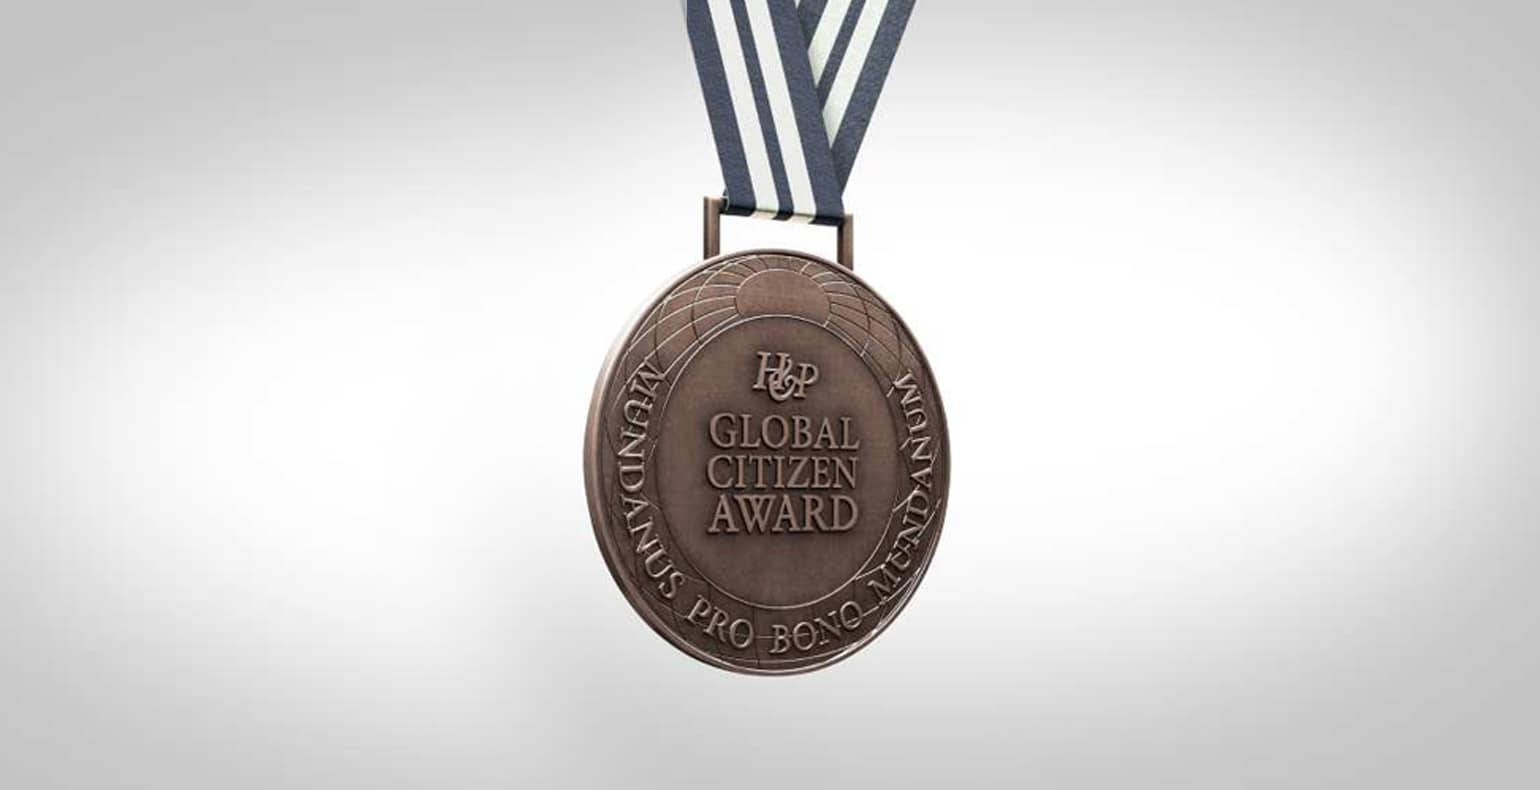 global citizen award medal